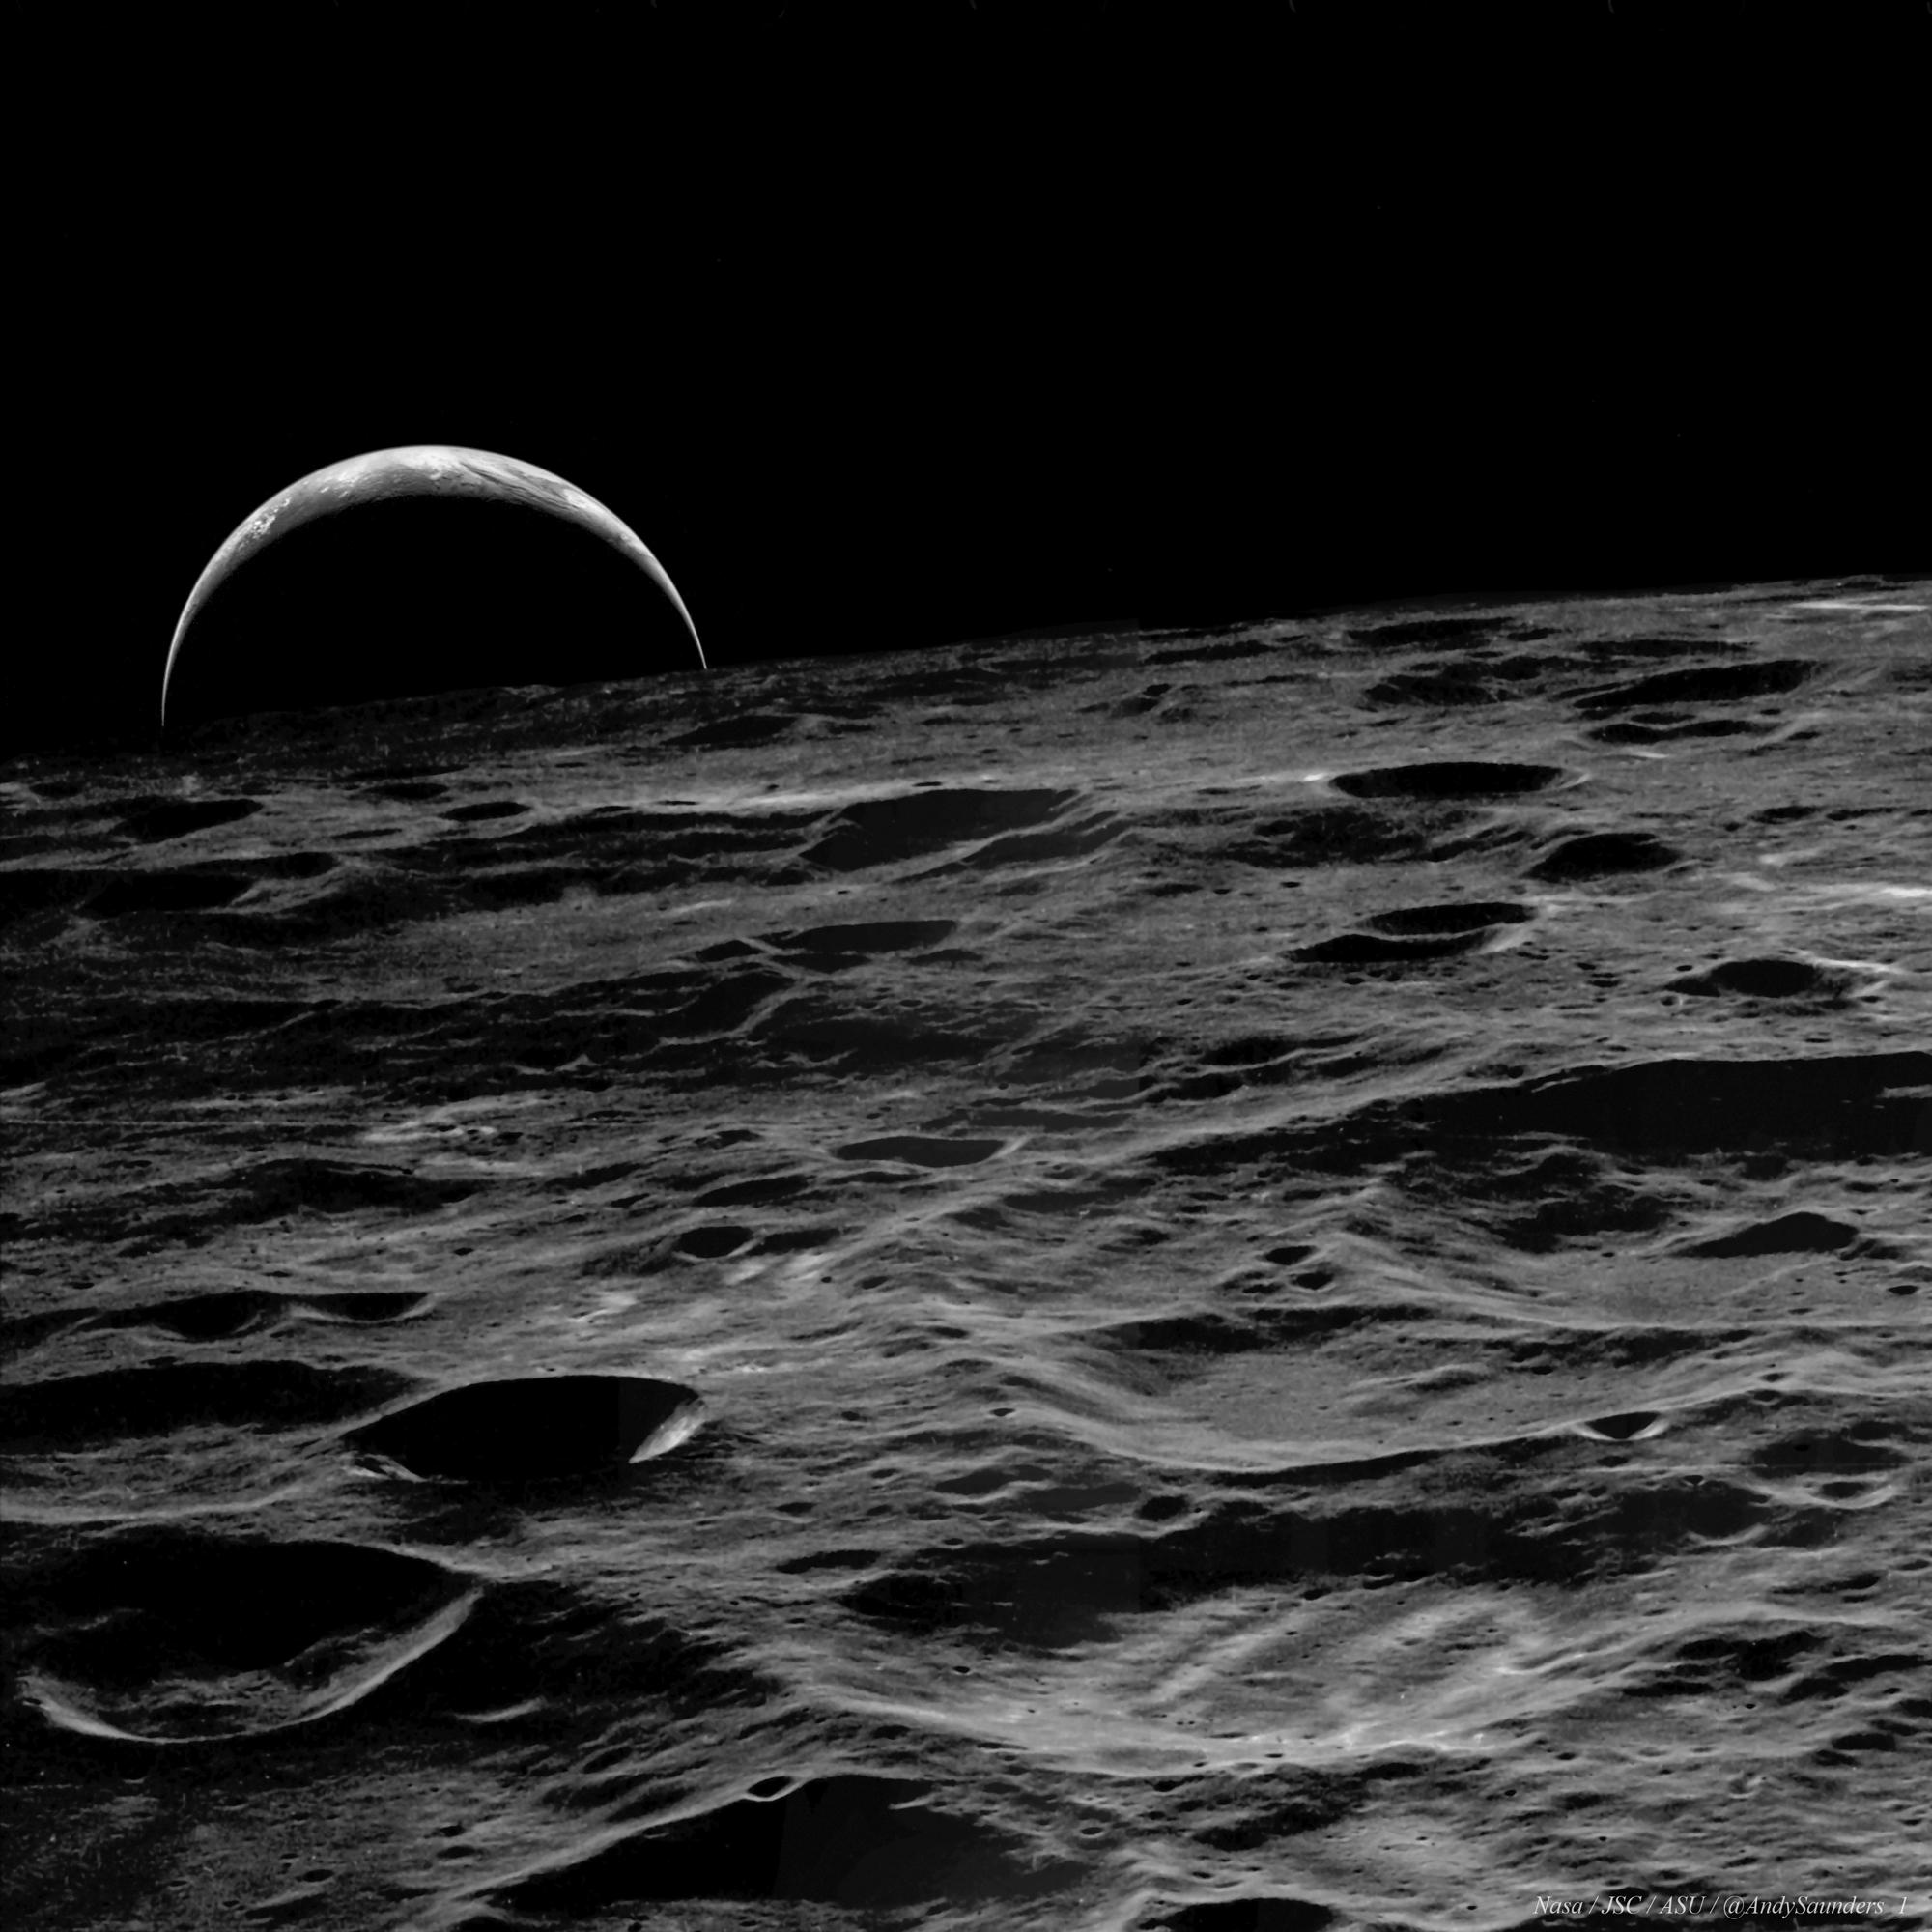 صورة من علوّ تُظهر تضاريس سطح القمر المليء بالفوّهات، وتظهر الأرض عند الأفق على شكل هلالٍ كبير كأنها قوسٌ فوقه.